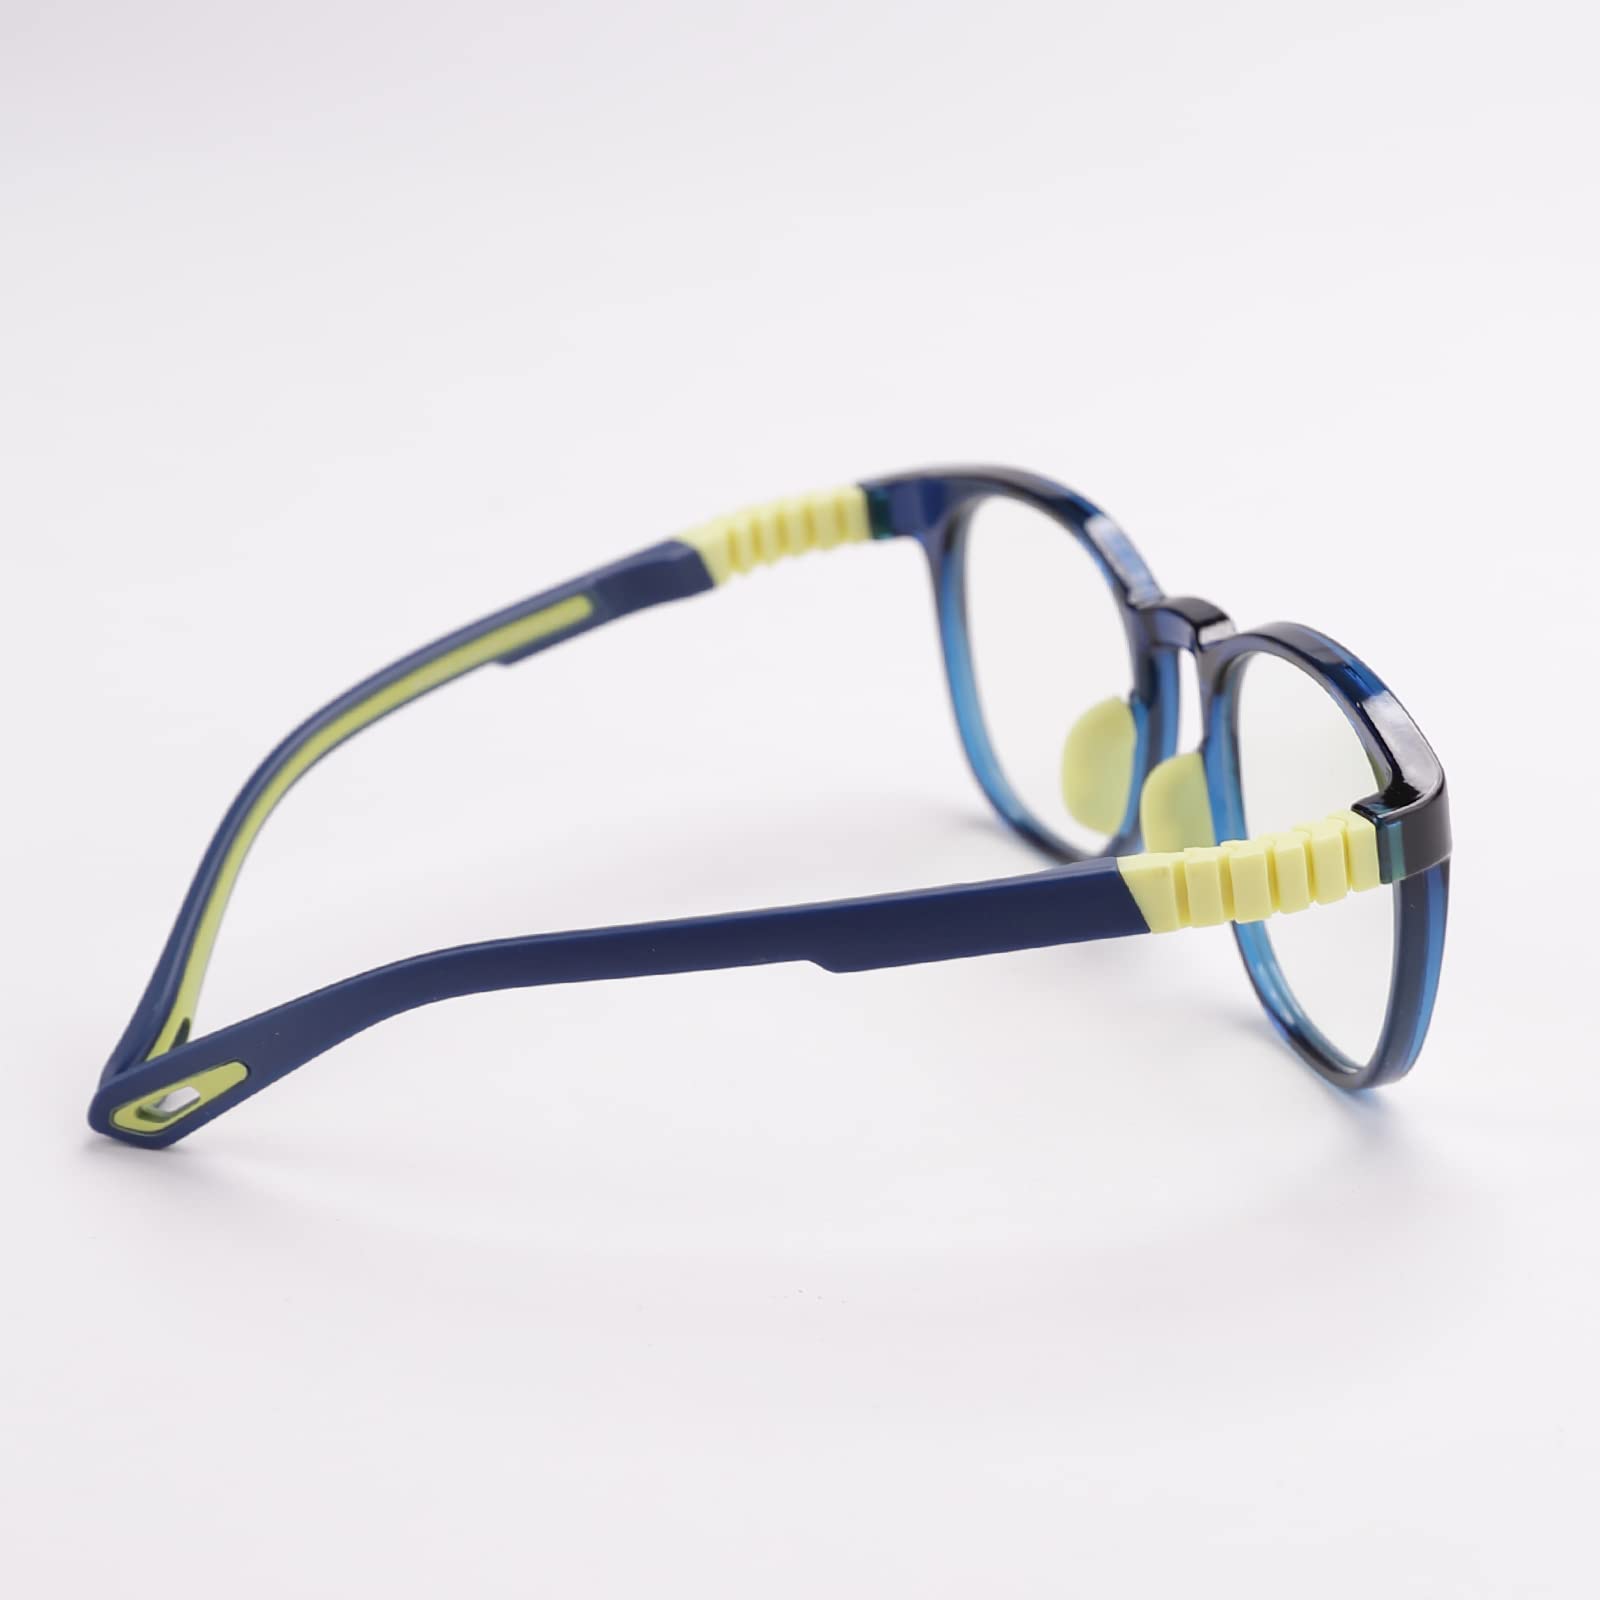 Intellilens Round Kids Computer Glasses for Eye Protection | Zero Power, Anti Glare & Blue Light Filter Glasses | Blue Cut Lenses for Boys and Girls (Navy) (49-19-130)